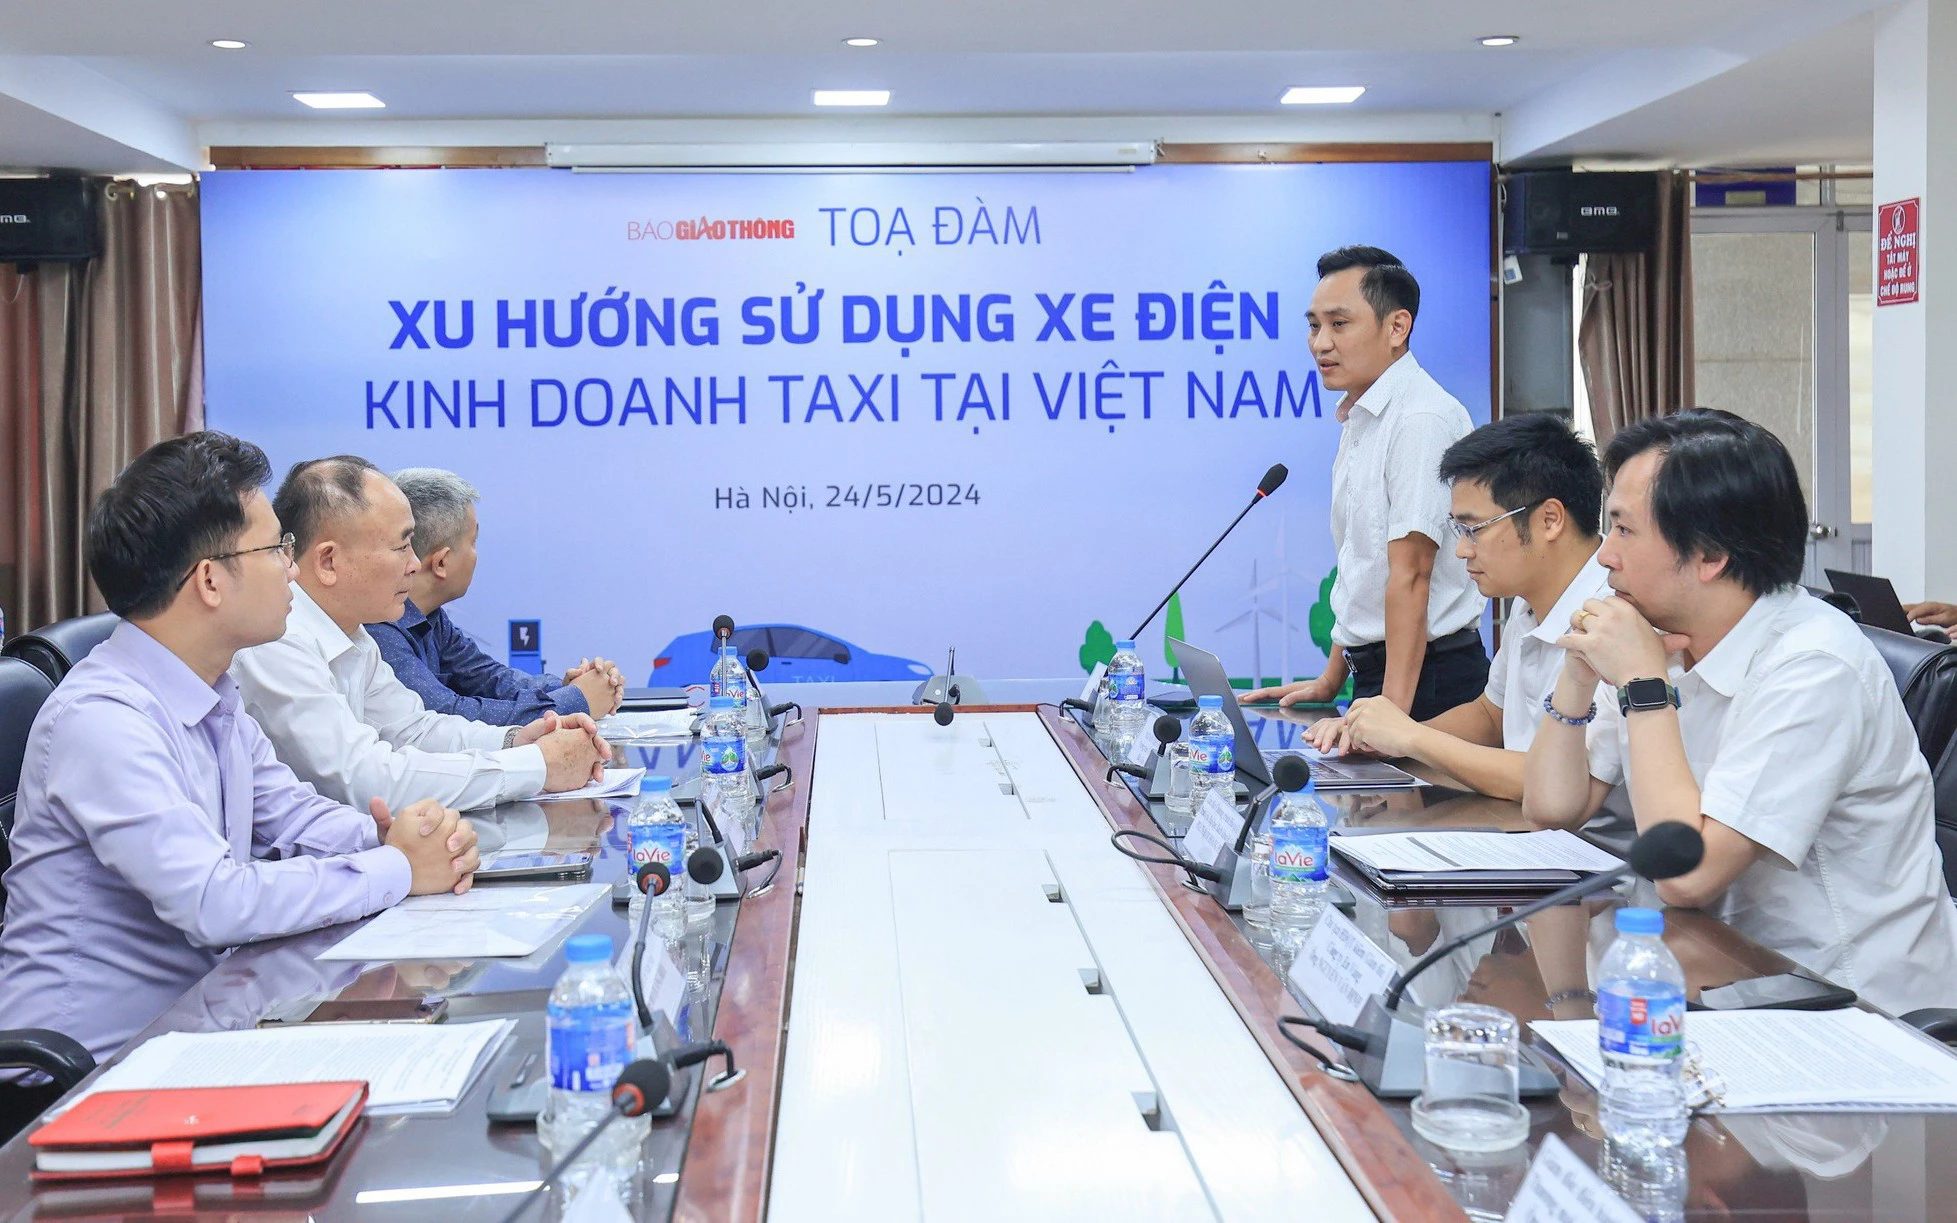 Trực tiếp: Tọa đàm 'Xu hướng sử dụng xe điện kinh doanh taxi tại Việt Nam'